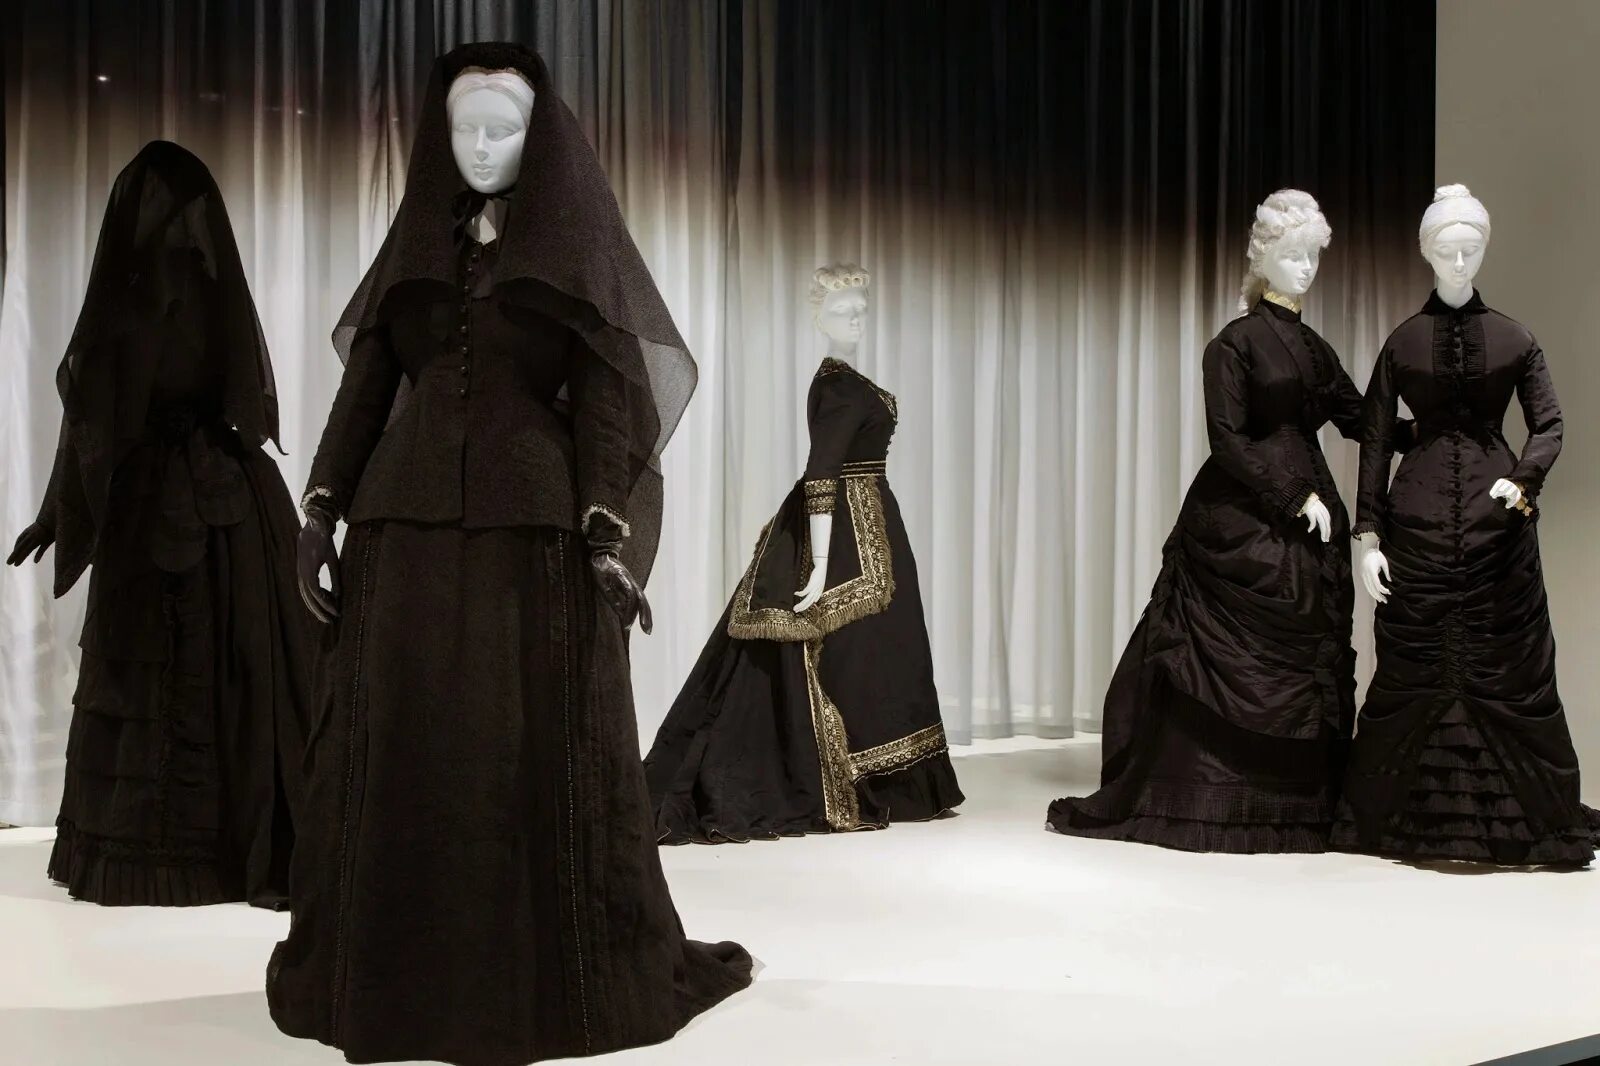 Траурное платье 19 век Англия. Платье вдовы 19 век. Траурный наряд женщин 17 века в Англии. Траурная одежда для женщин. Приснилась вдова